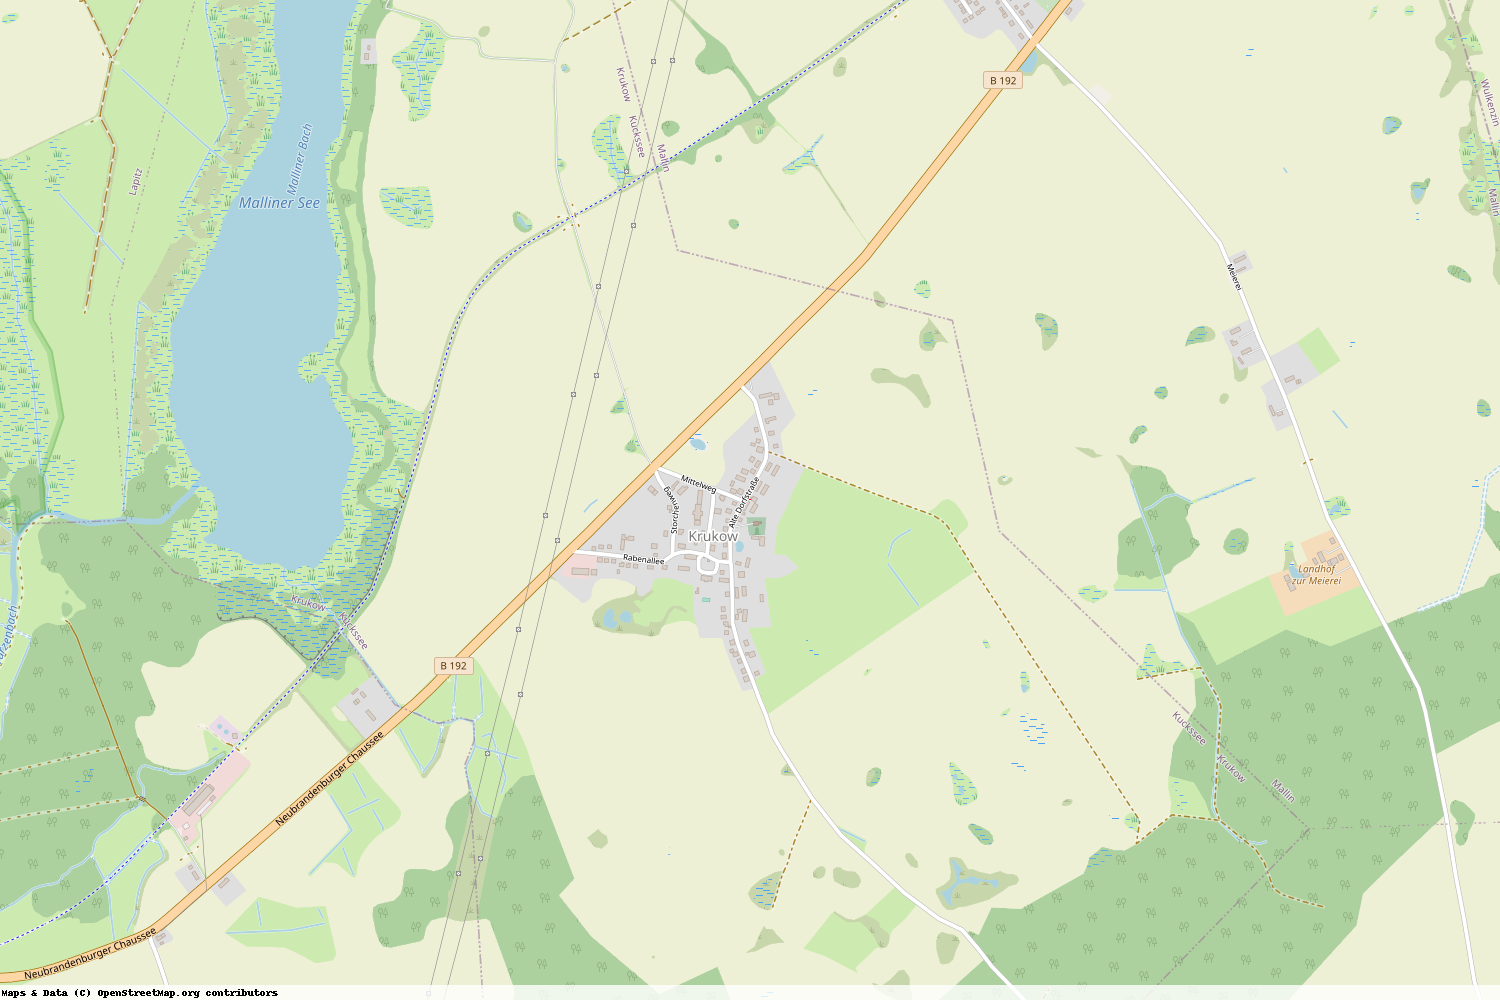 Ist gerade Stromausfall in Mecklenburg-Vorpommern - Mecklenburgische Seenplatte - Kuckssee?